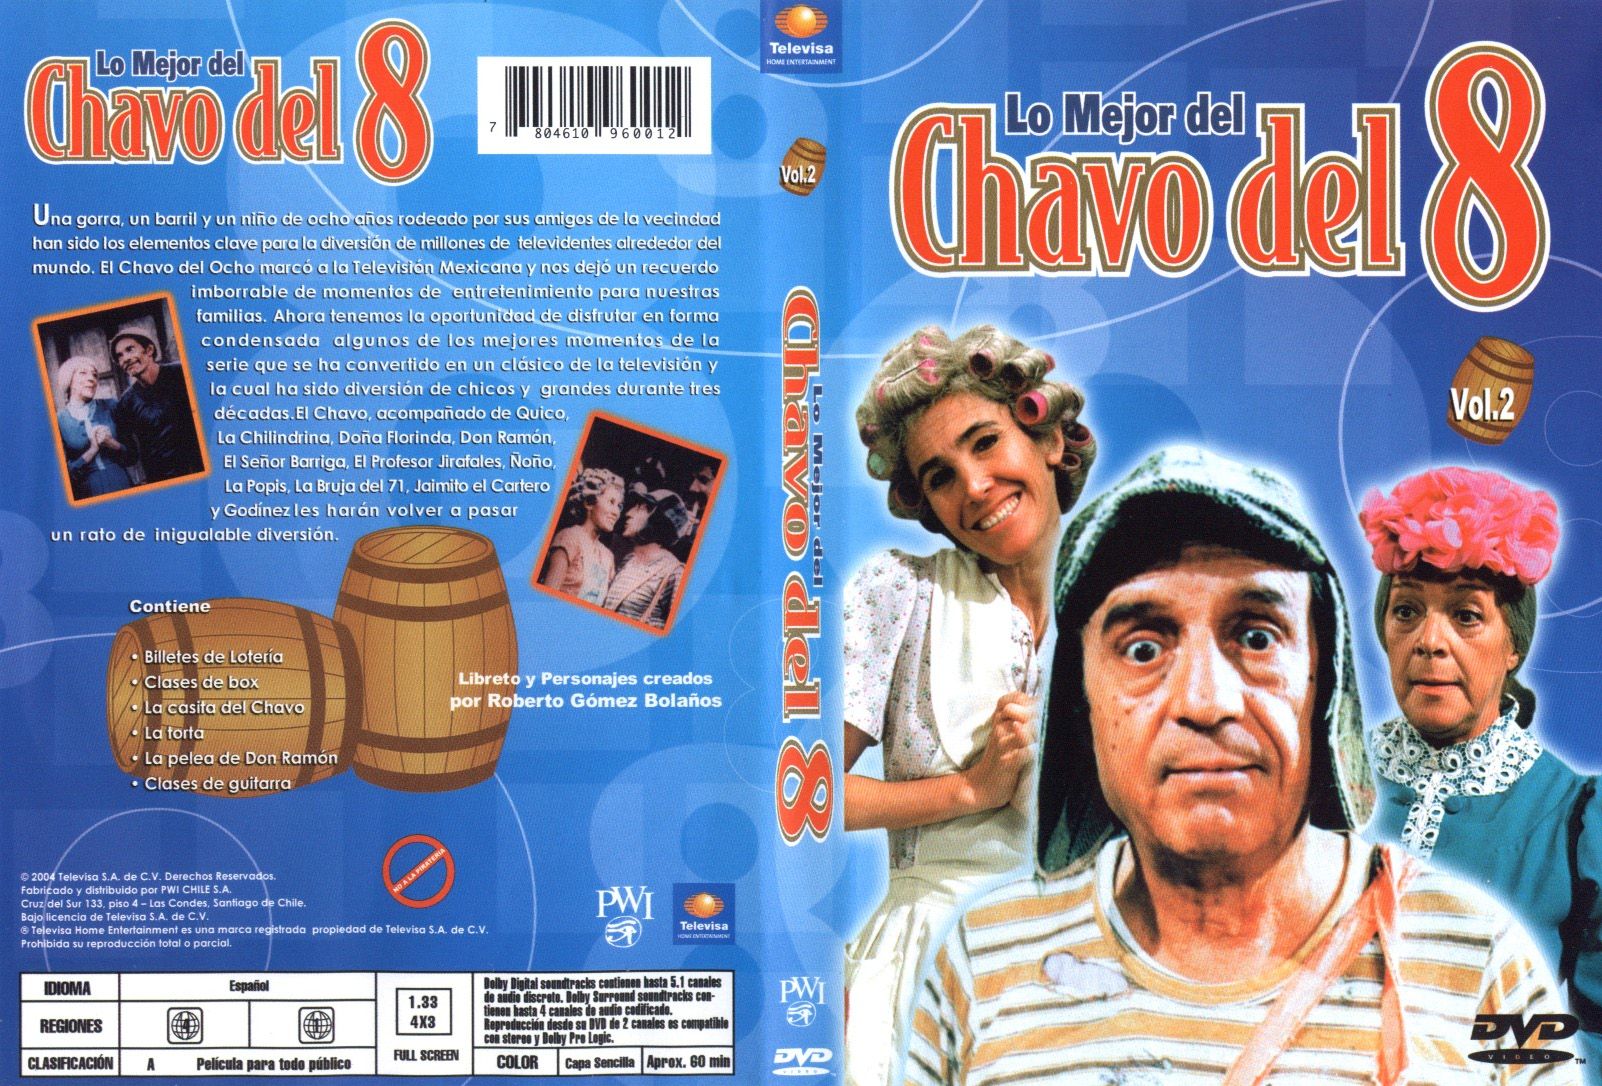 El Chavo Del 8 Volumen 2 - DVD Full NTSC Latino.